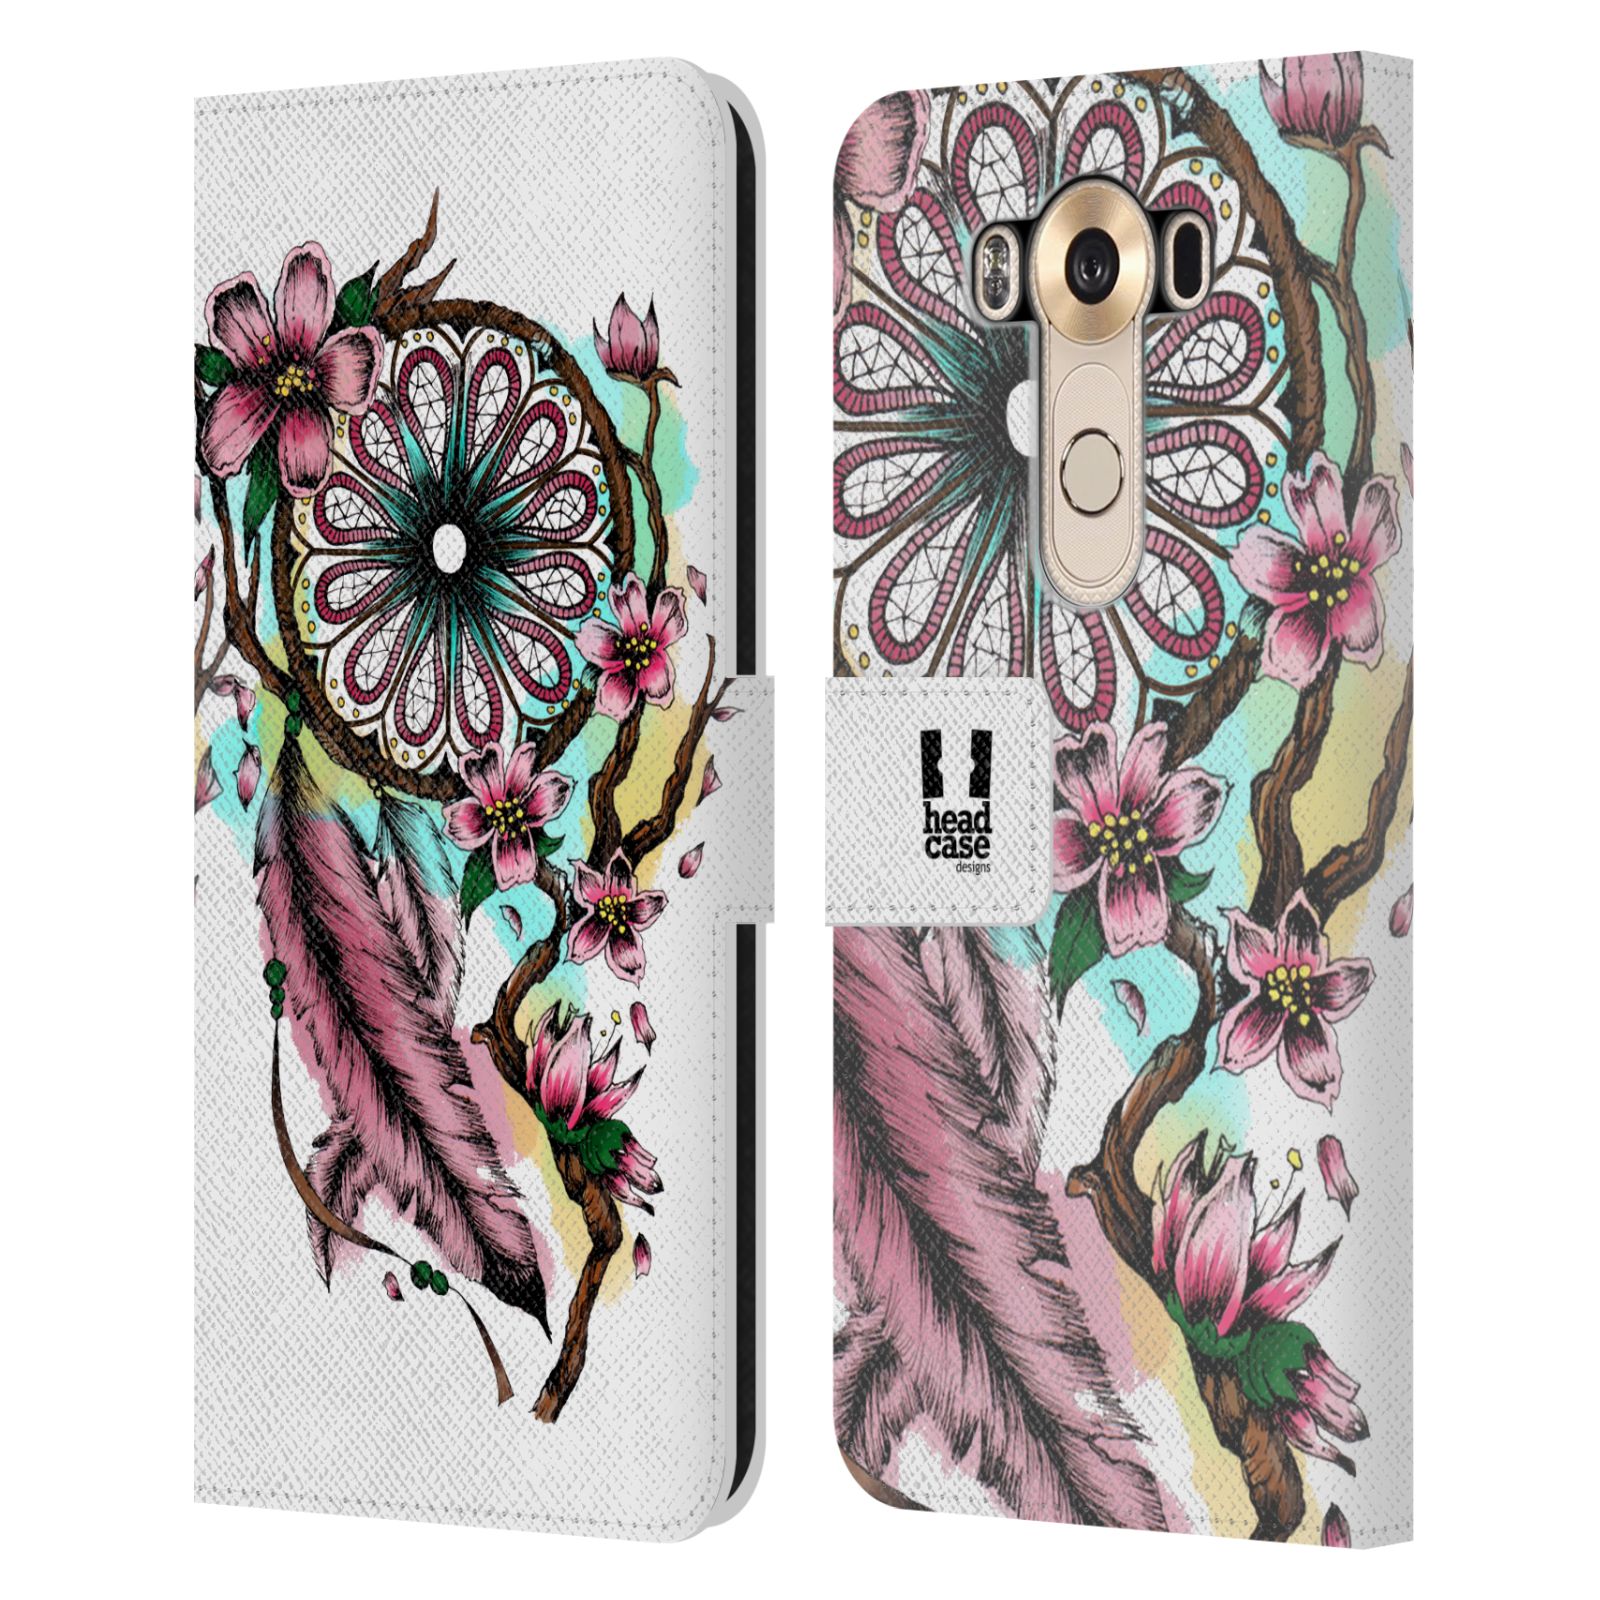 Pouzdro na mobil LG V10 - Head Case - Lapač snů květy fialová